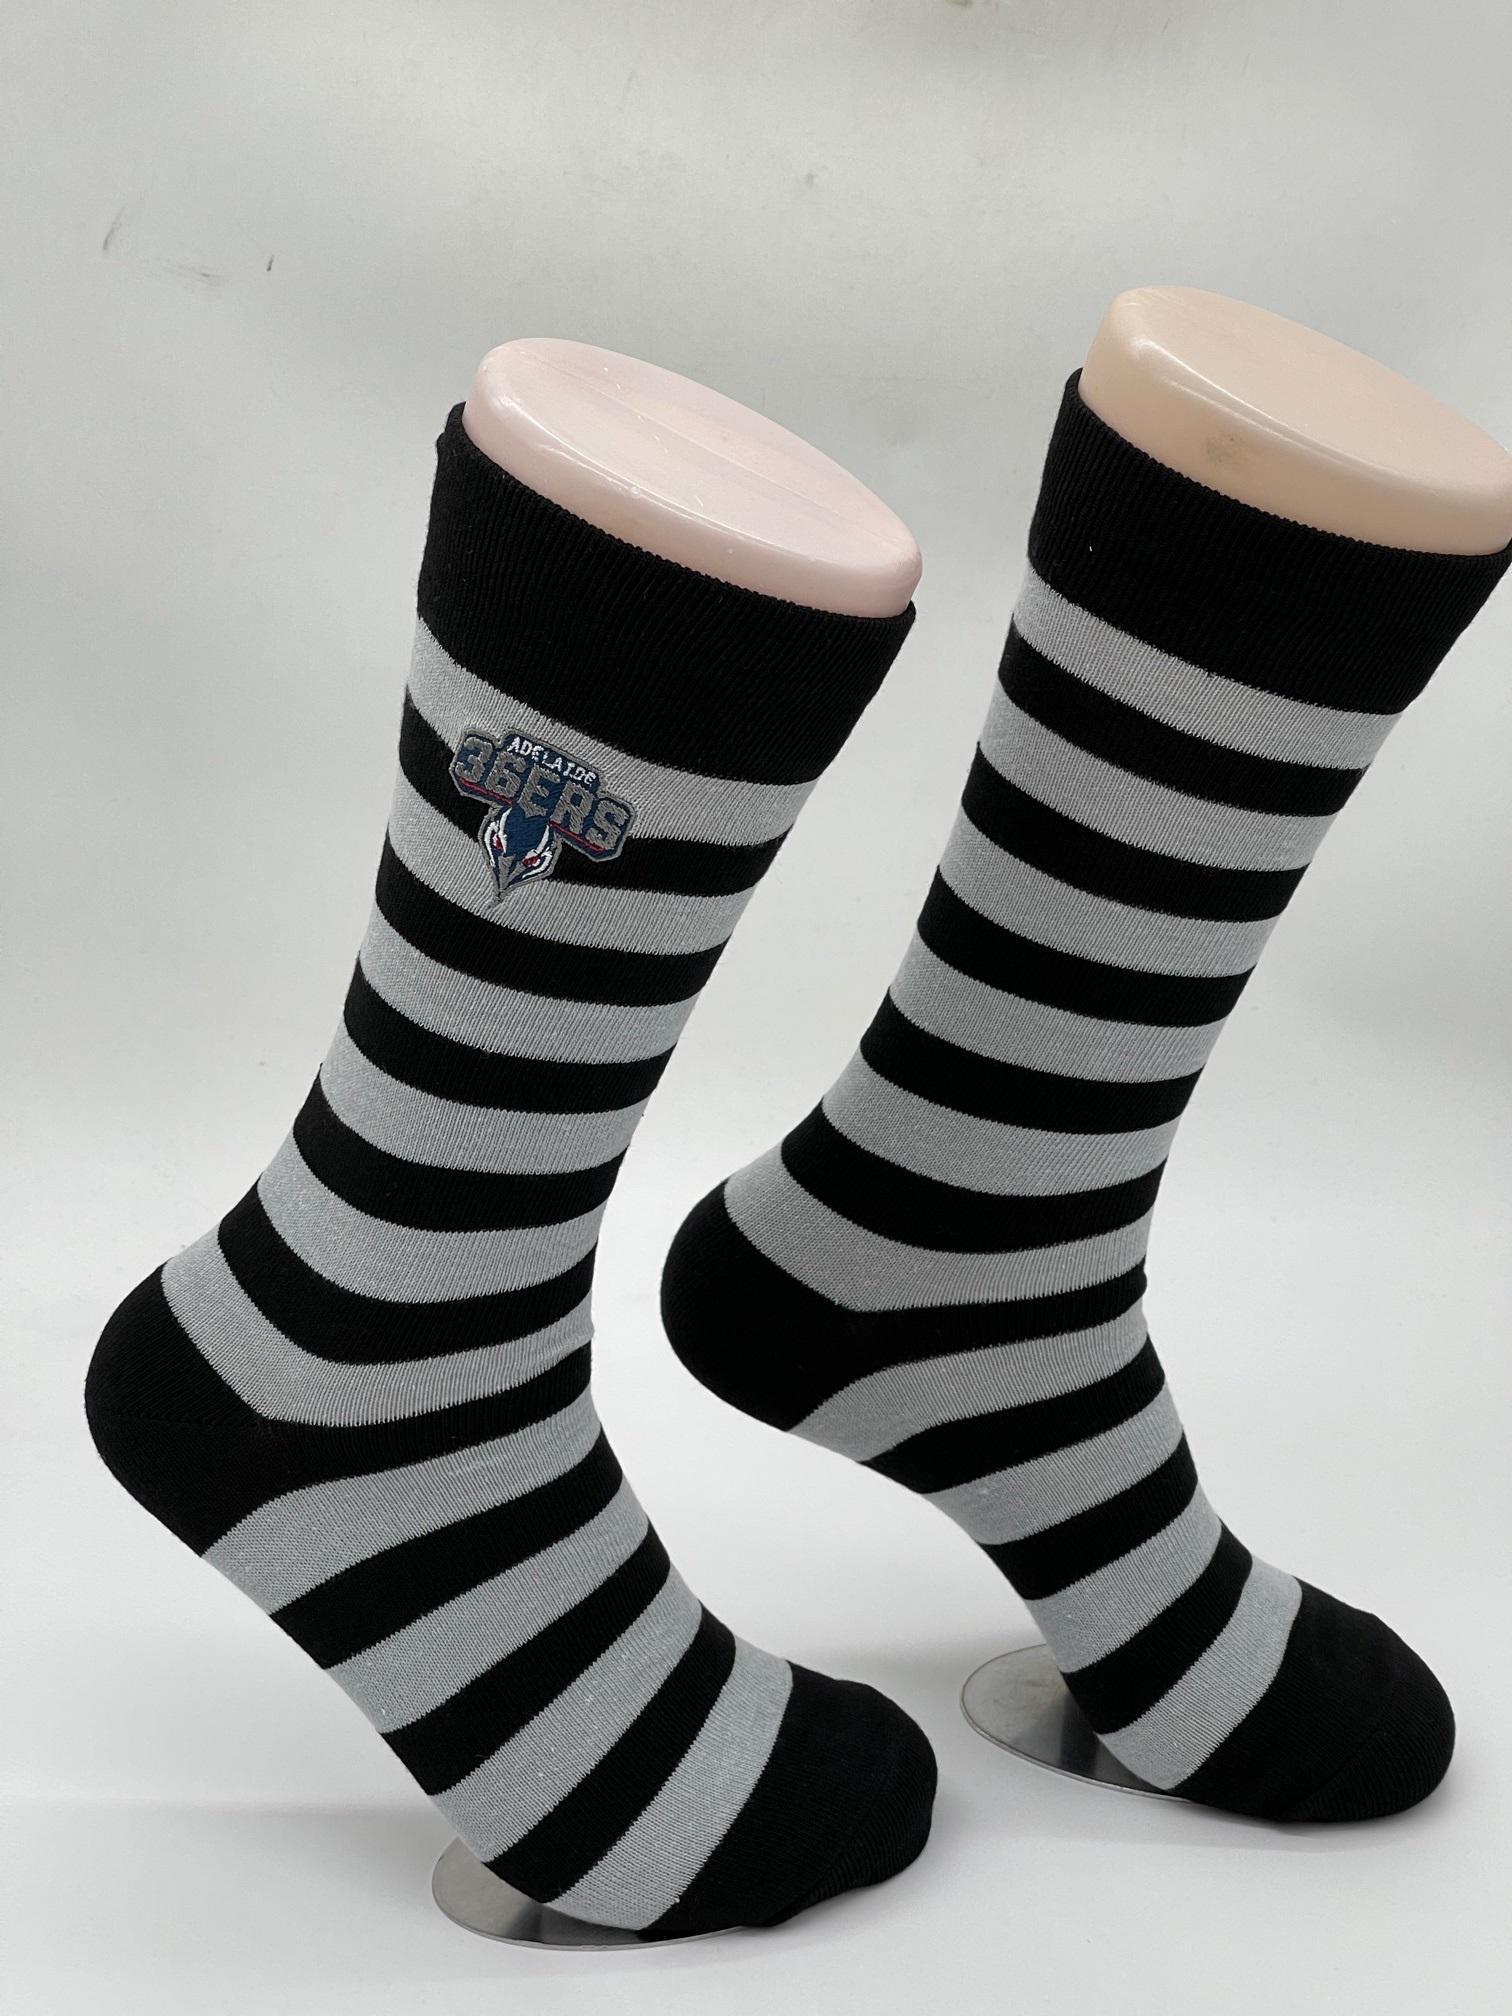 Logo Black Hooped Business Socks - Adelaide 36ers